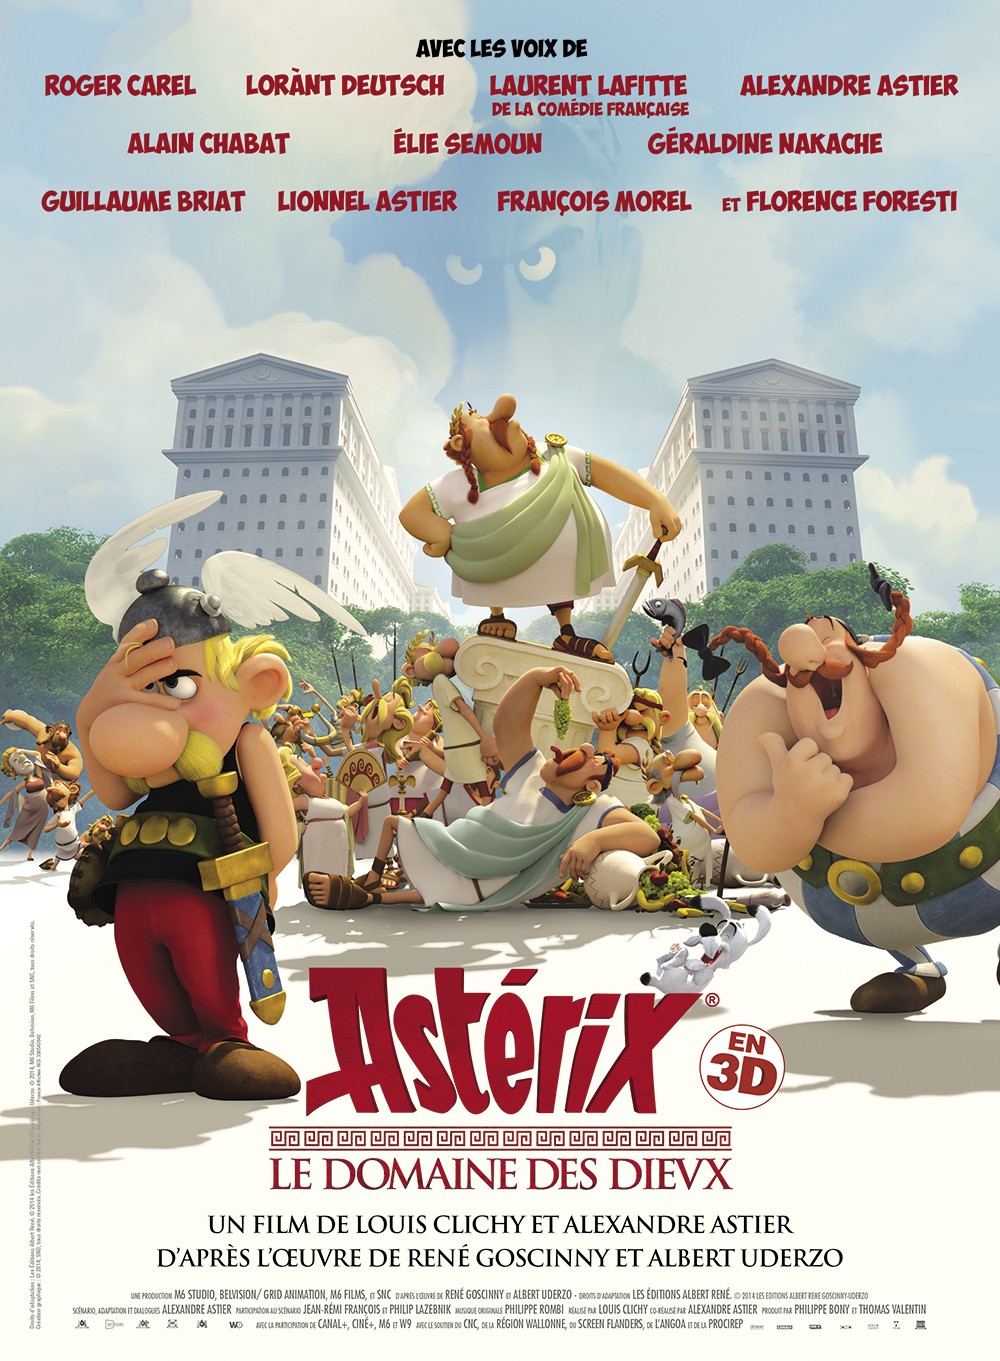 Asterix-Le Domaine des dieux